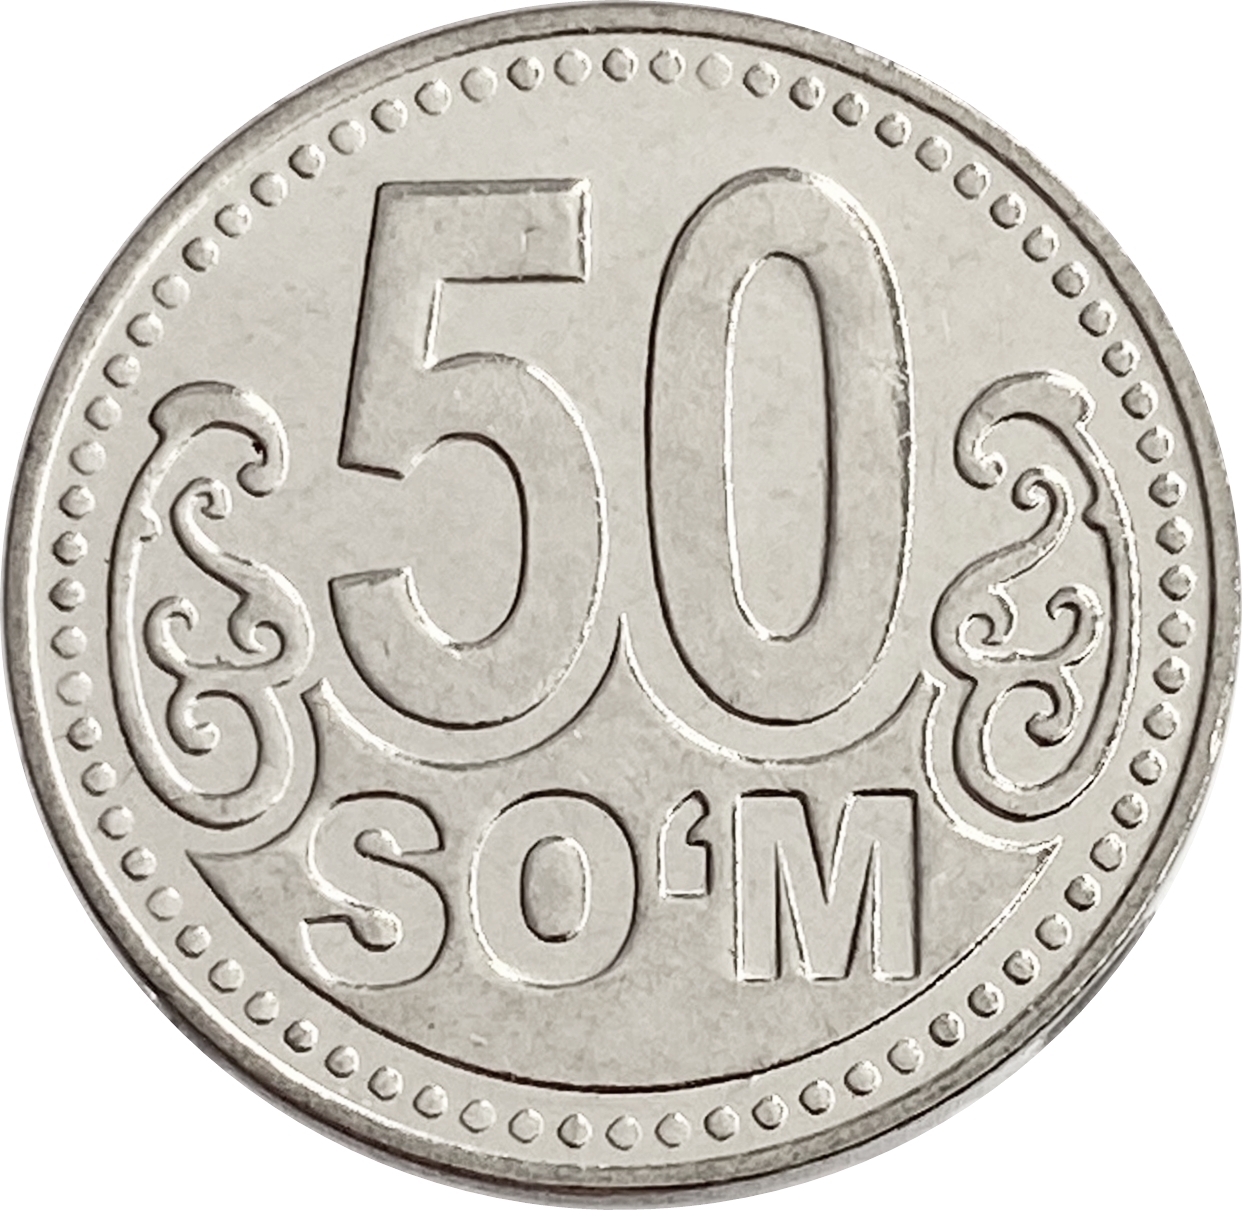 26 сумов. Монета 50 сум. Монета 5 сум. Монета 50 тийин 1994 года Узбекистан. Монеты Узбекистана 2022.